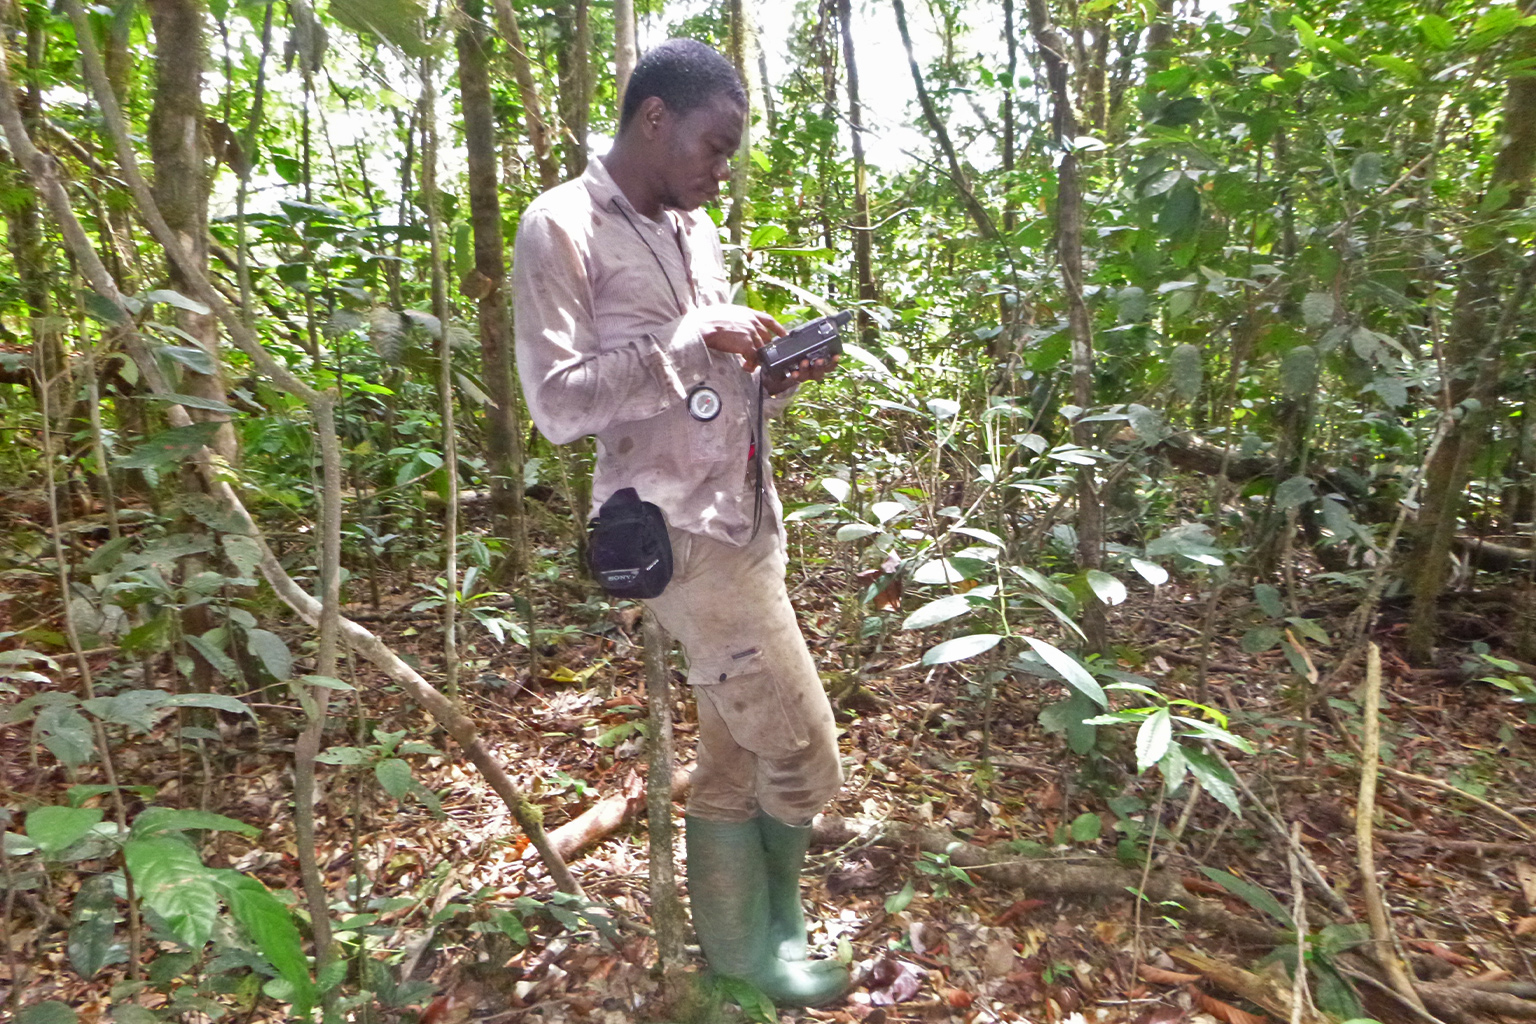 Daniel Mfossa in the field setting a camera trap.